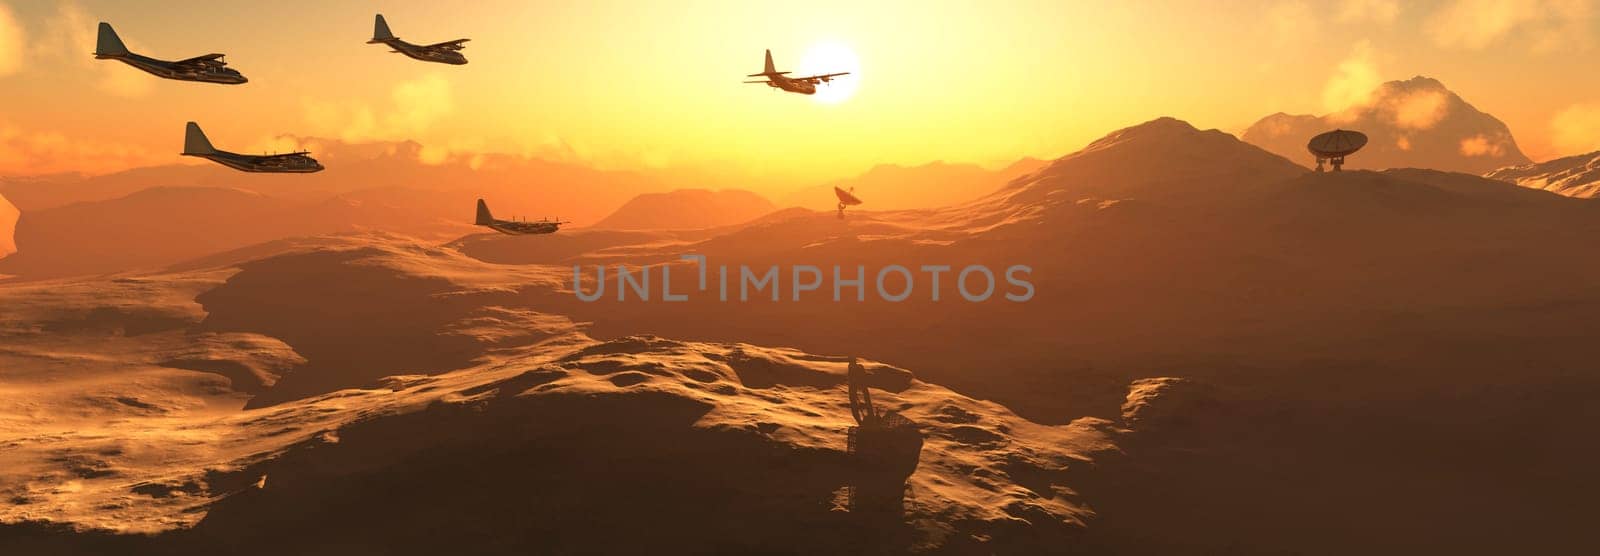 Squadron of Planes Flying over Desert Terrain at Sunset by Juanjo39